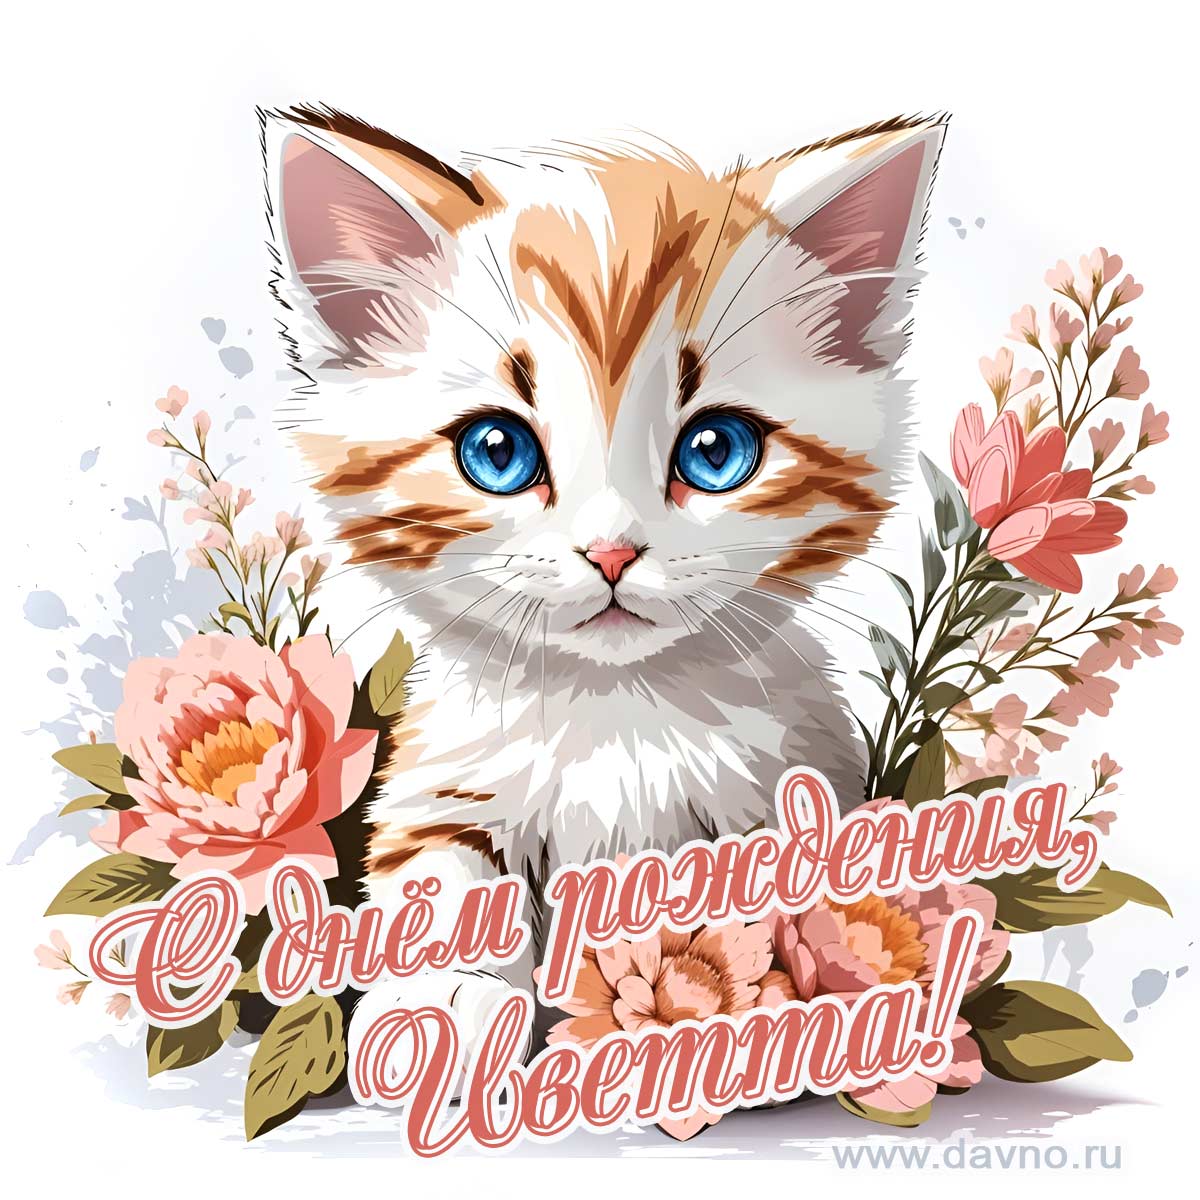 Новая рисованная поздравительная открытка для Иветты с котёнком